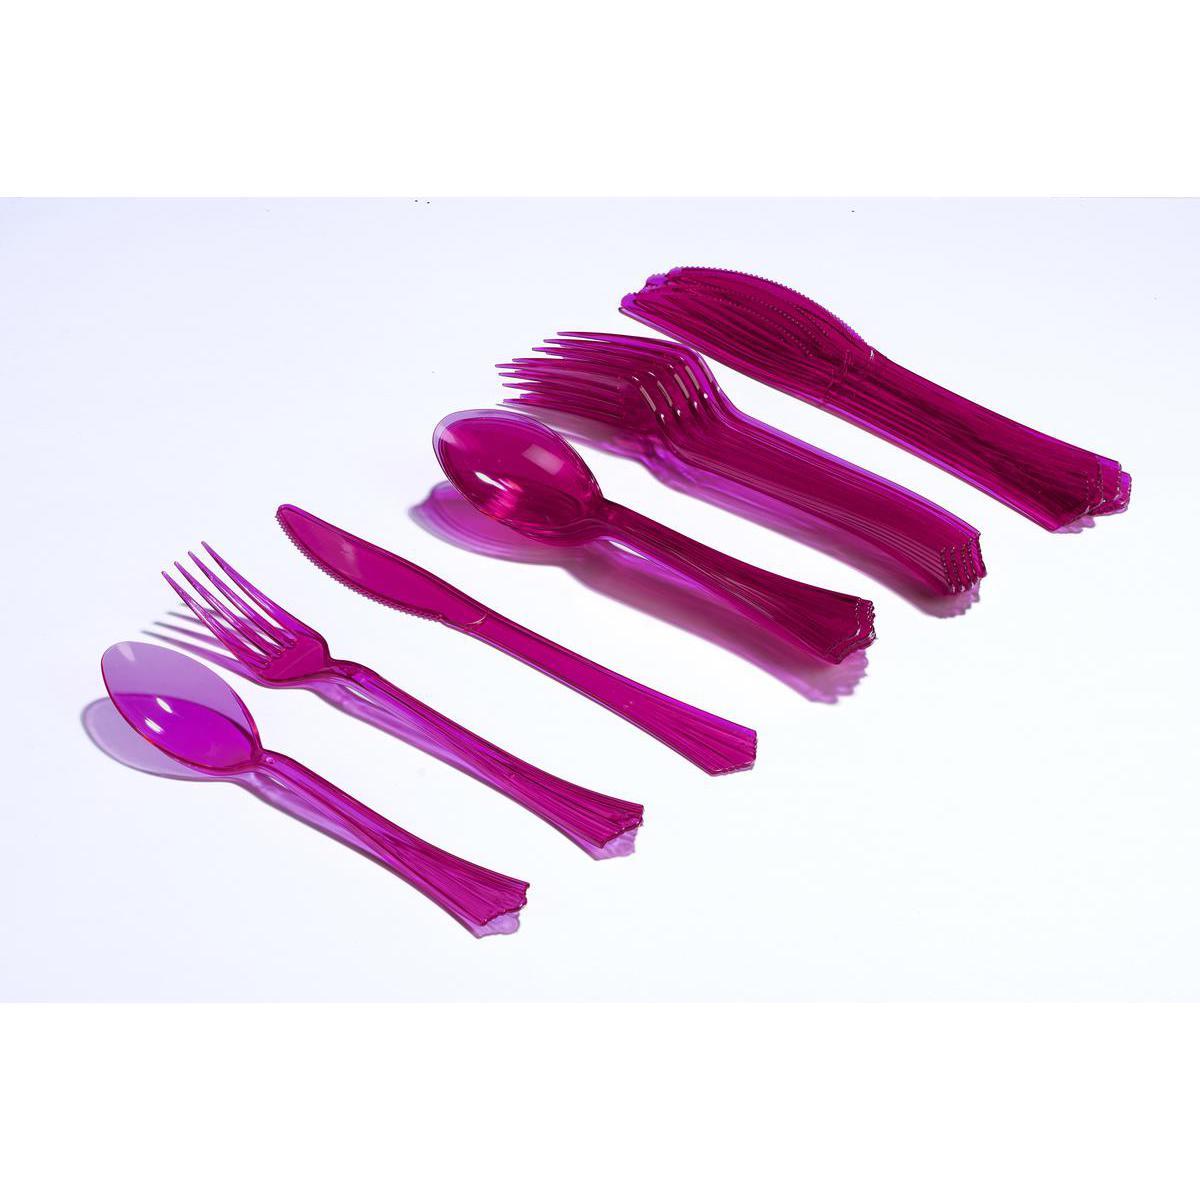 Ménagère 18 pièces - plastique - 19 cm - Violet orchidée